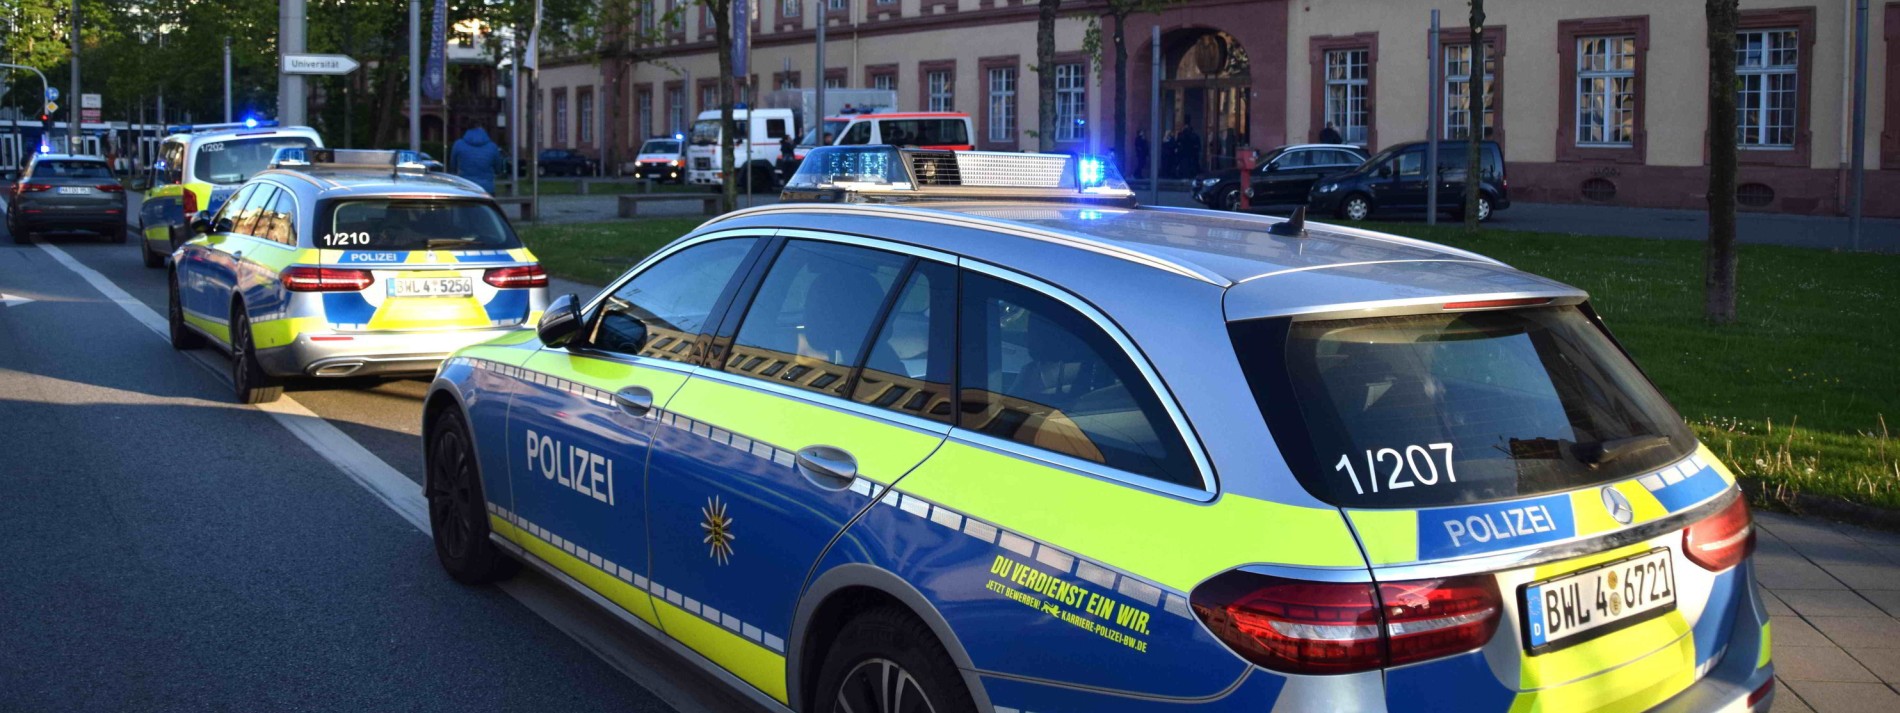 Schuss der Polizei ereignete sich in Hörsaal der Uni Mannheim